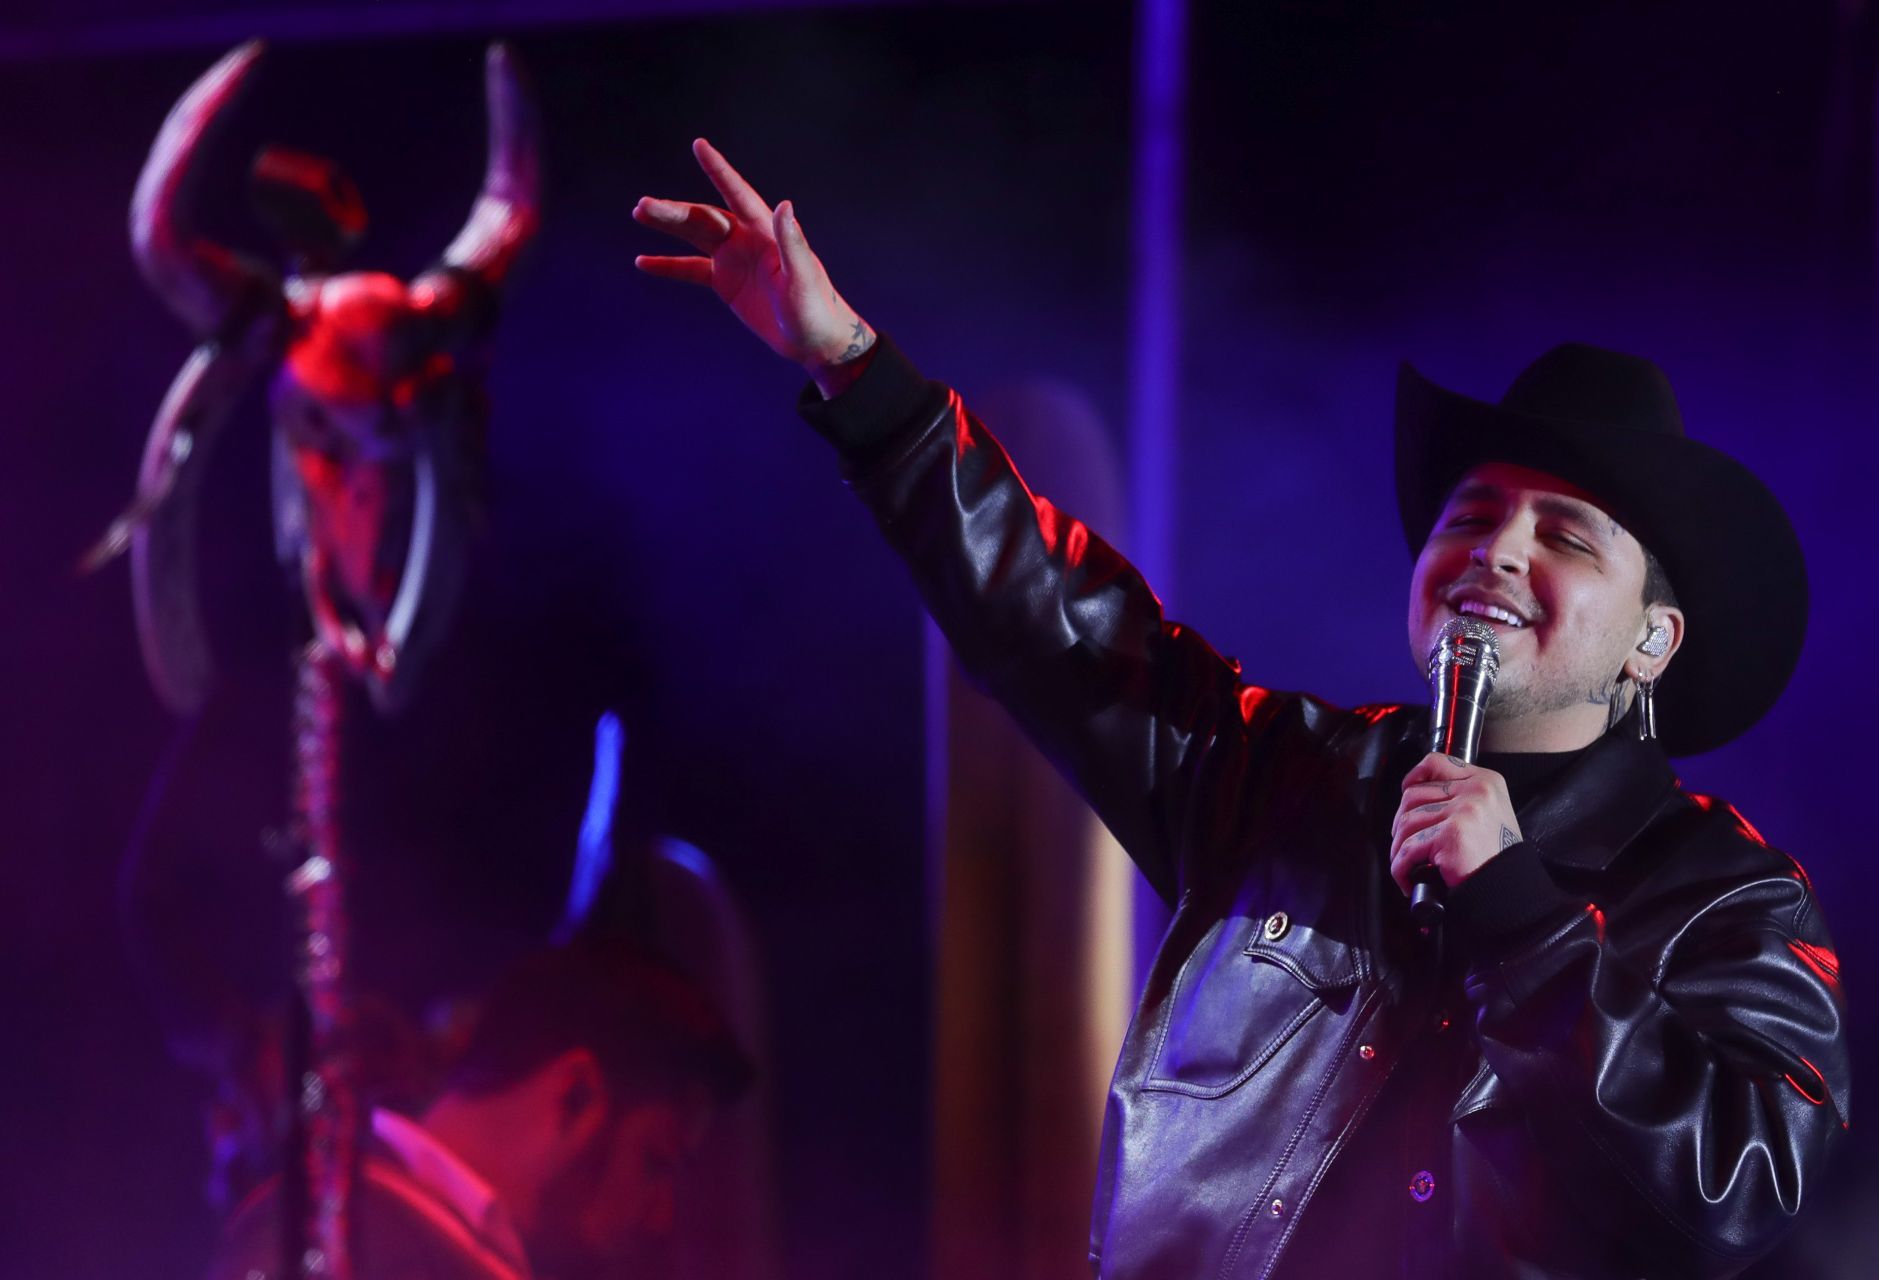 Christian Nodal continúa cosechando éxitos con el EP1 Forajido, parte del Top 10 de Billboard (FOTO: ESTEBAN HERNÁNEZ /CUARTOSCURO.COM)